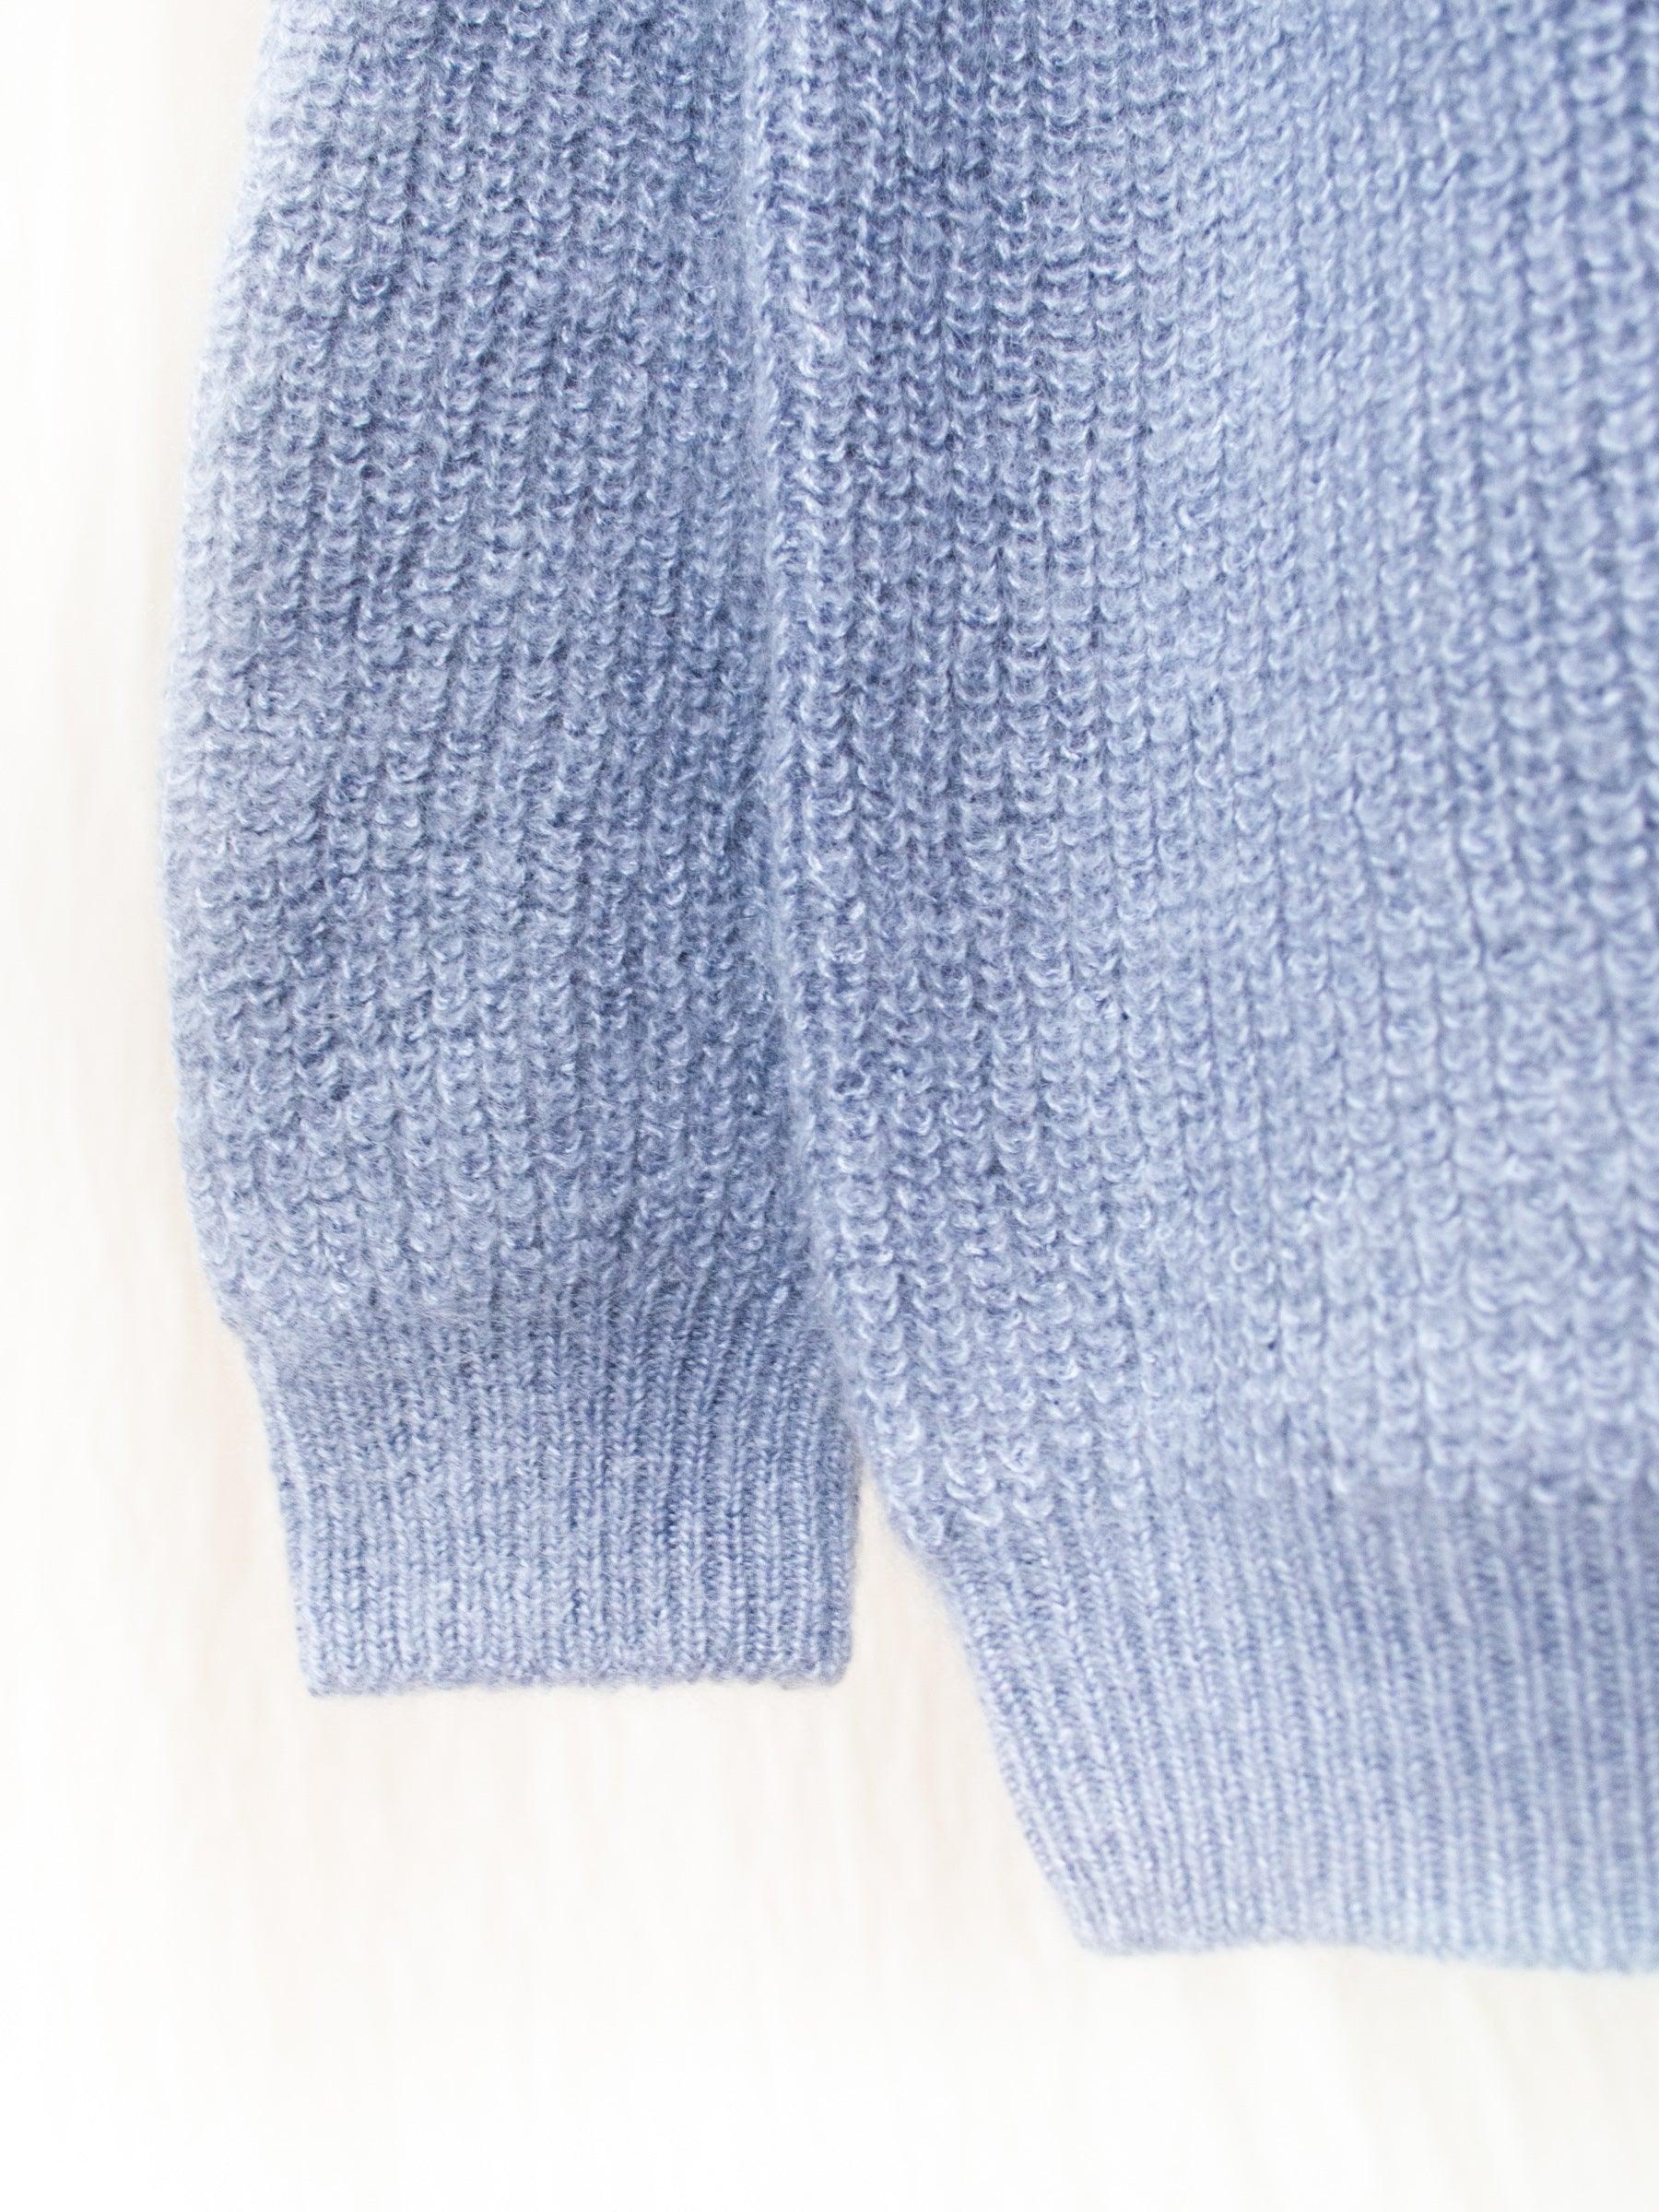 Namu Shop - Phlannel Mohair Silk Rib Stitch Sweater - Pale Blue